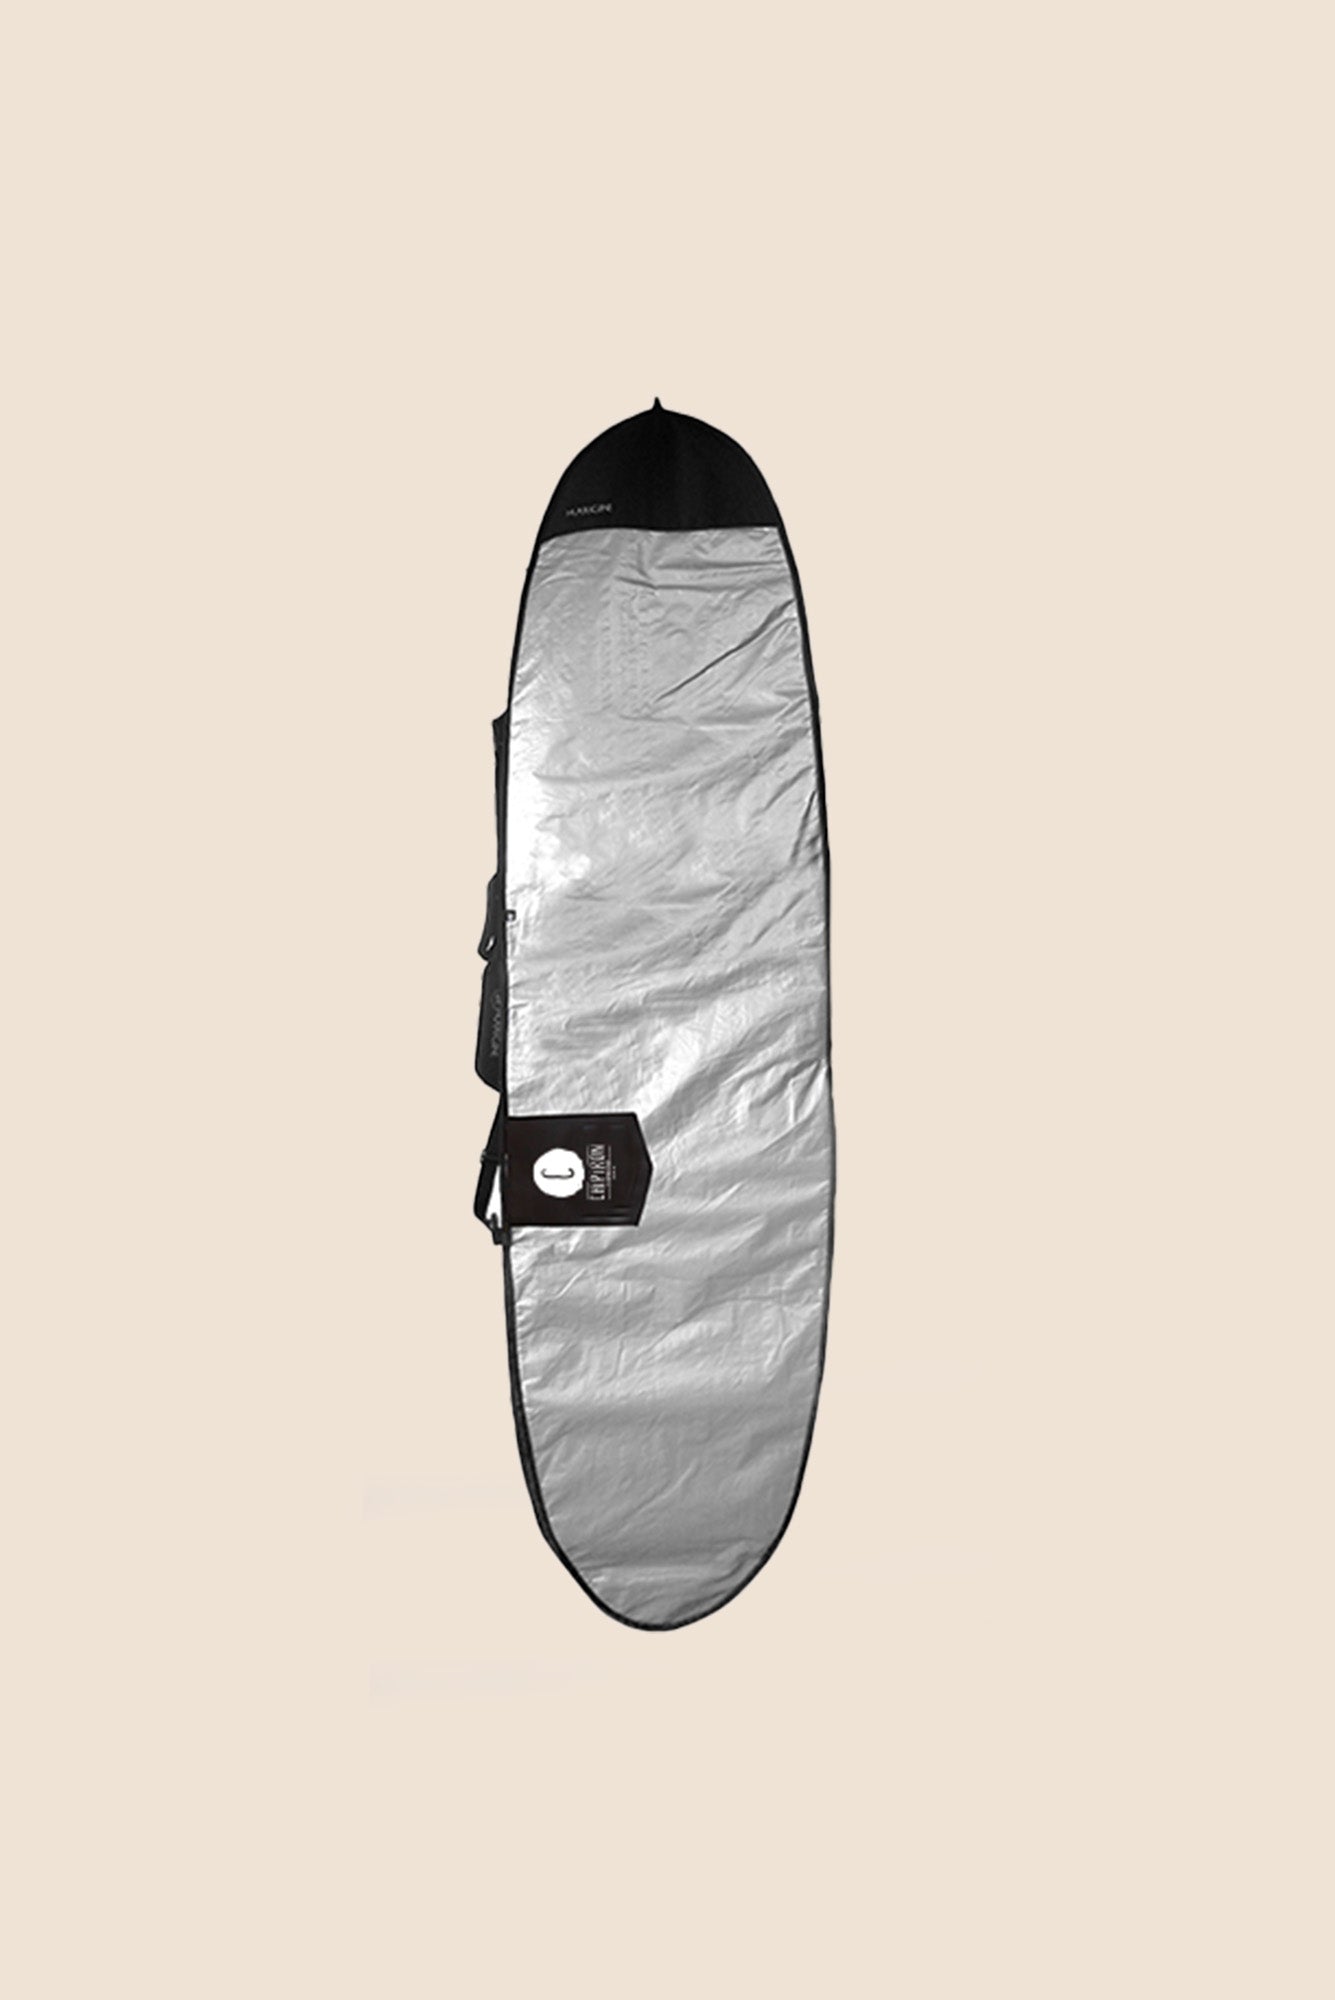 Boardbag minimal 1 planche